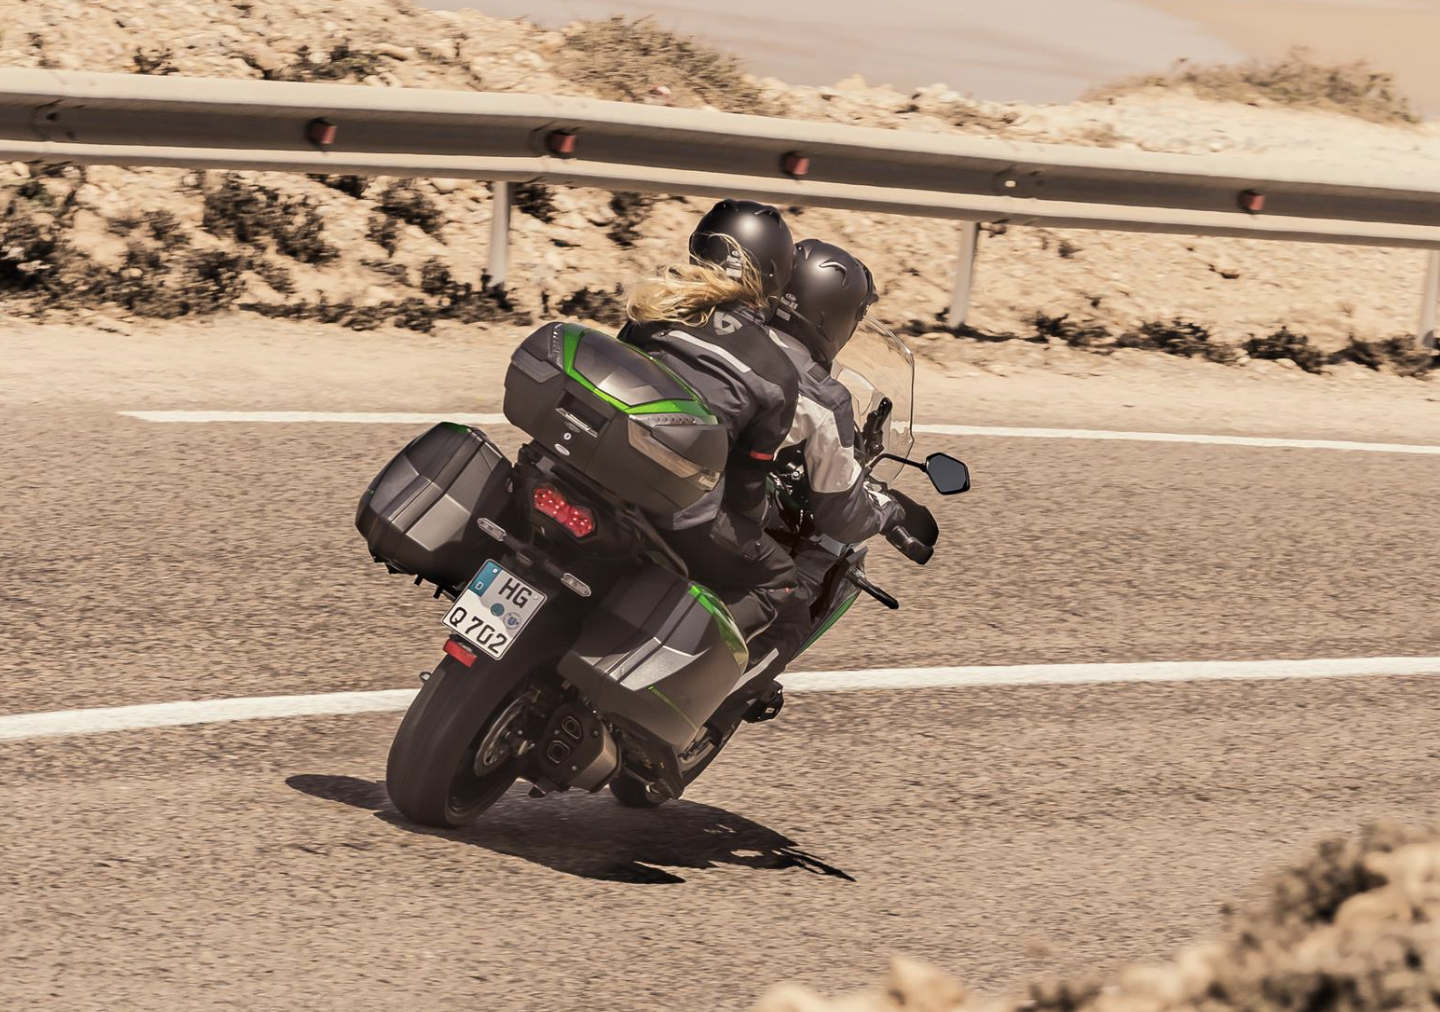 Actiefoto 2023 Kawasaki Versys 1000 SE met twee motorrijders op doortocht in woestijnachtig landschap